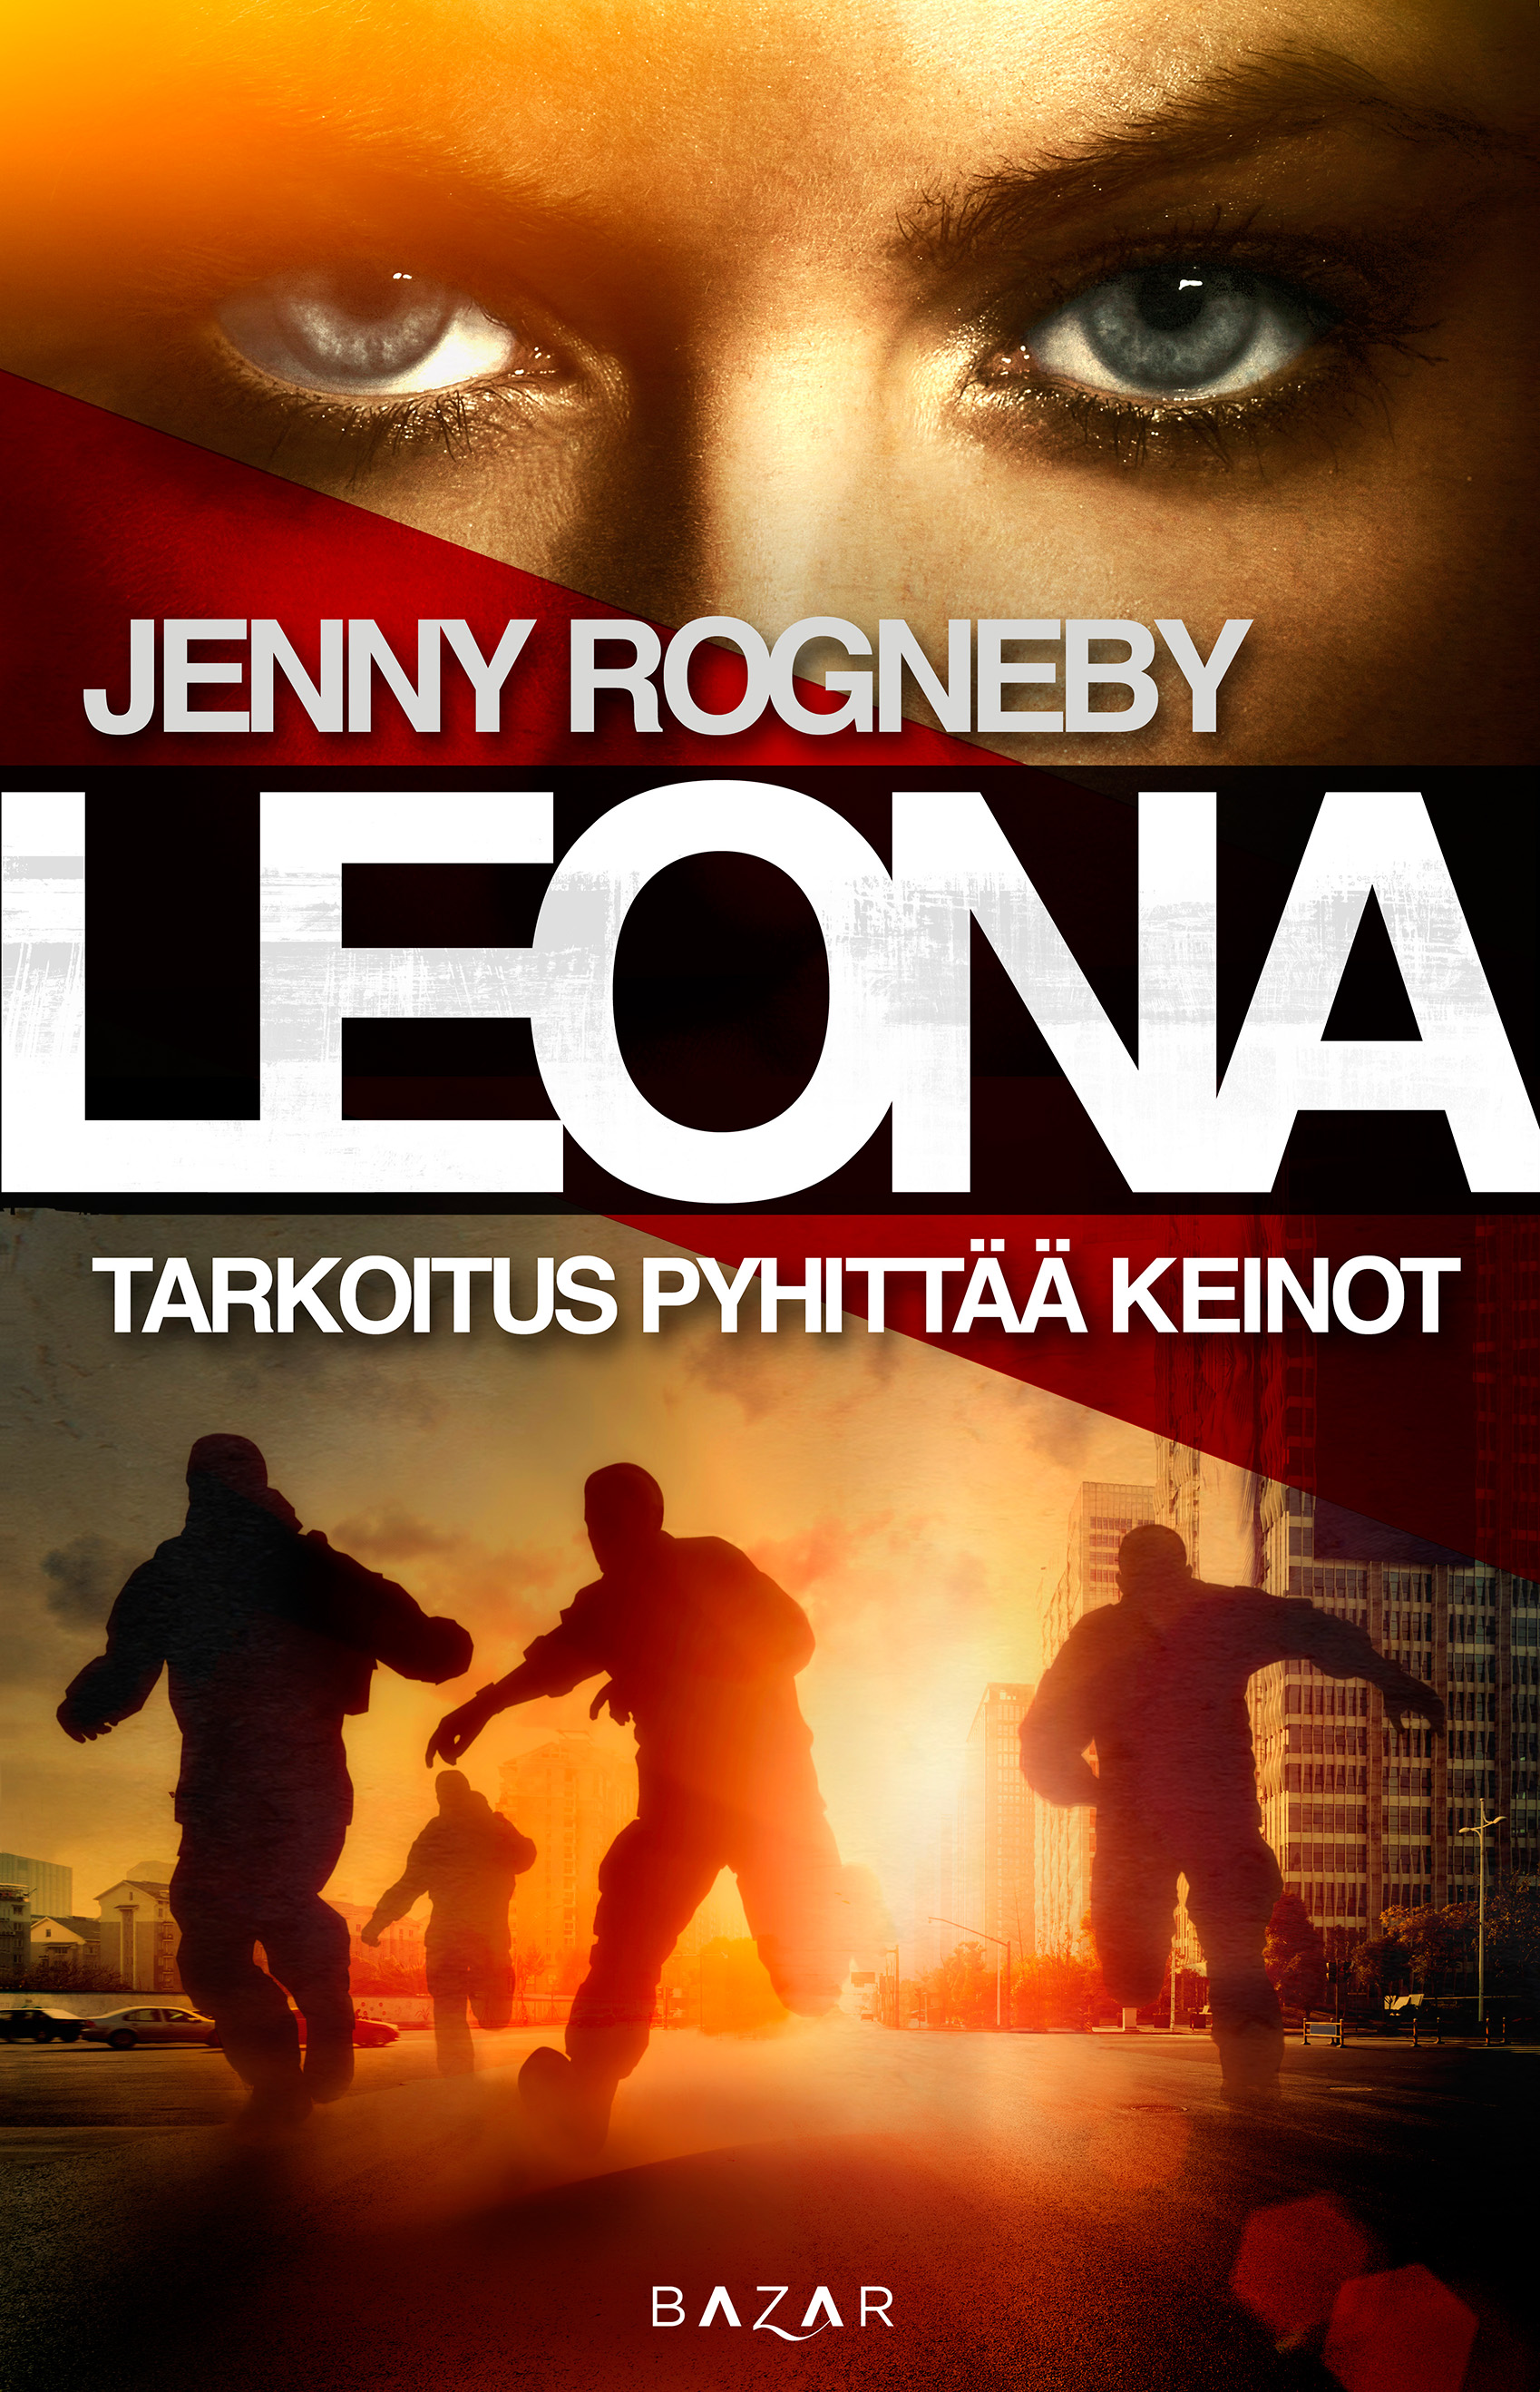 Rogneby, Jenny - Leona - Tarkoitus pyhittää keinot, ebook